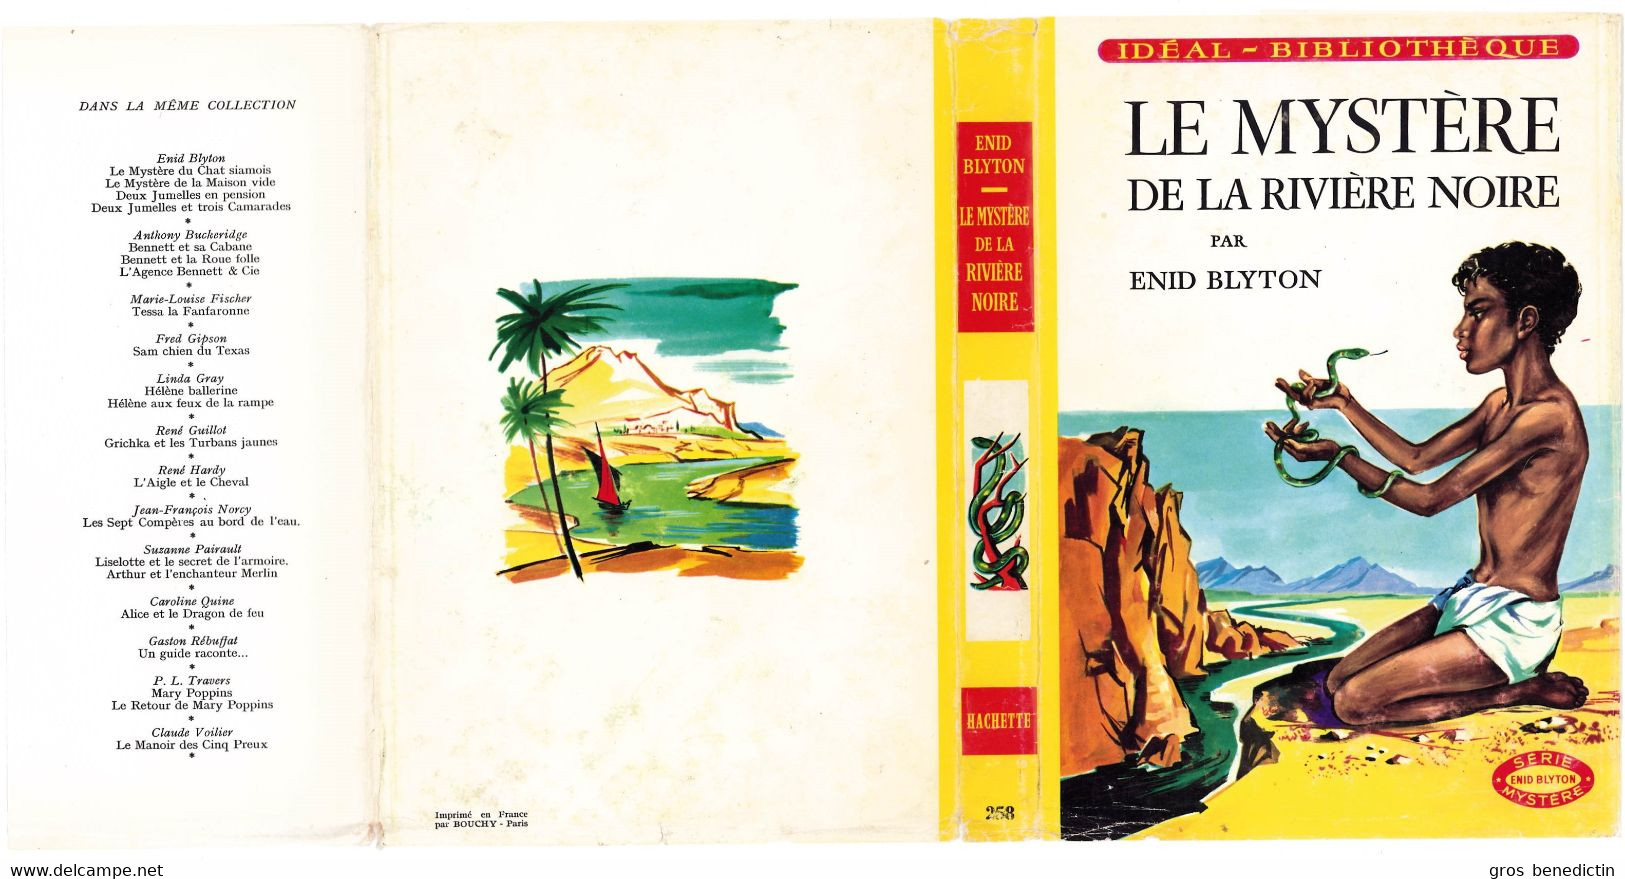 Hachette - Idéal Bibliothèque - Enid Blyton - "Le mystère de la rivière noire" - 1965 - #Ben&Bly&Myst